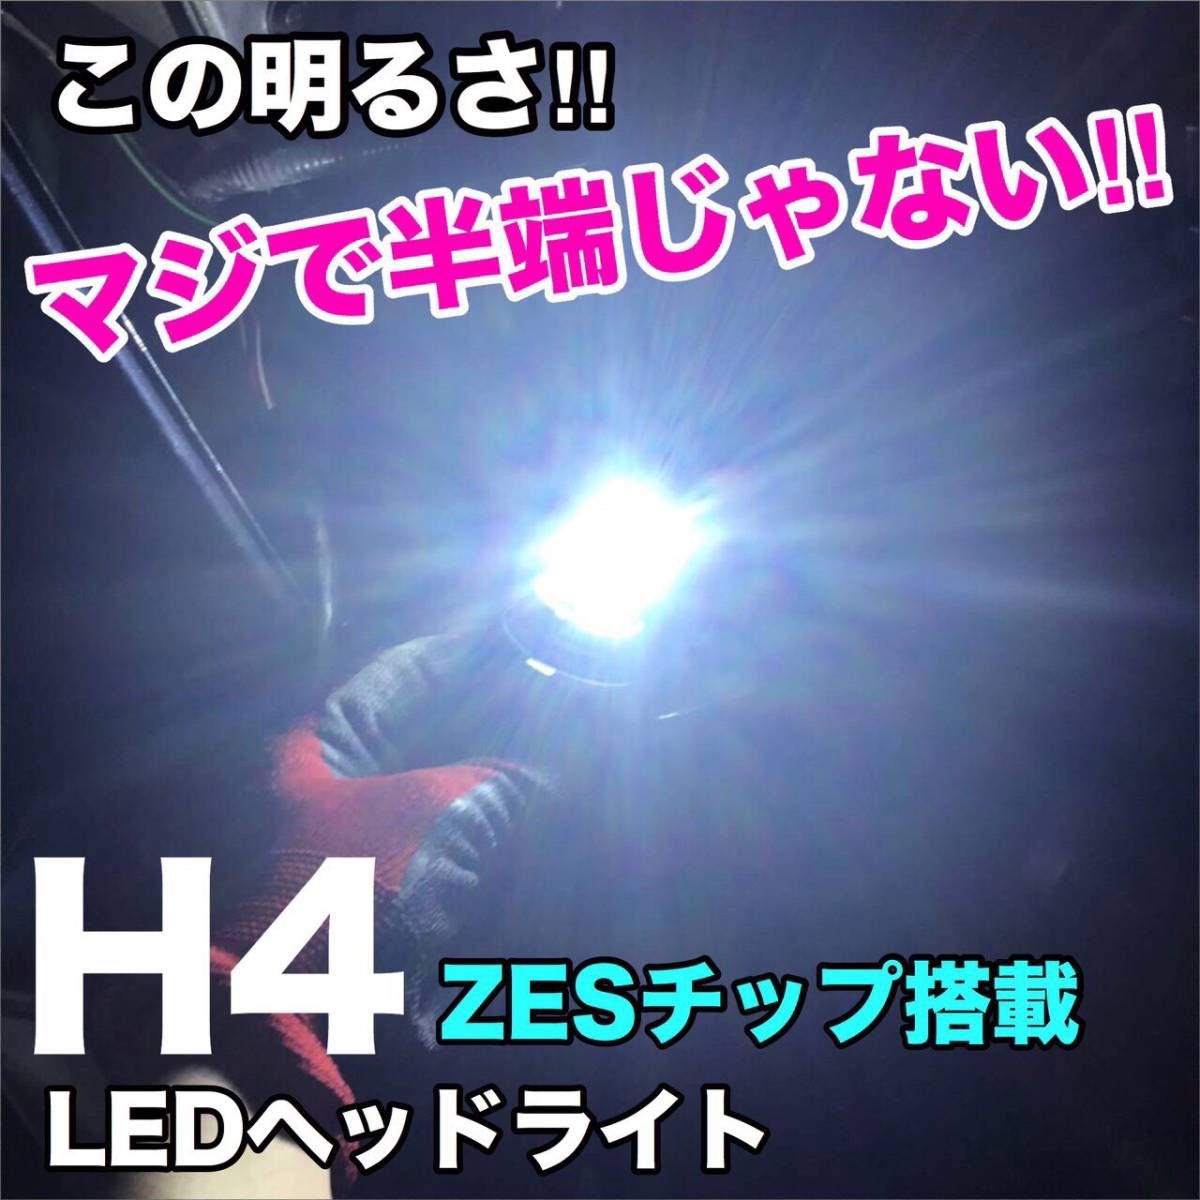 ZC/ZD スイフト LED ルームランプ ウェッジ球セット T10 COB全面発光 バックランプ 車内灯 リバースランプ ヘッドライト_画像6